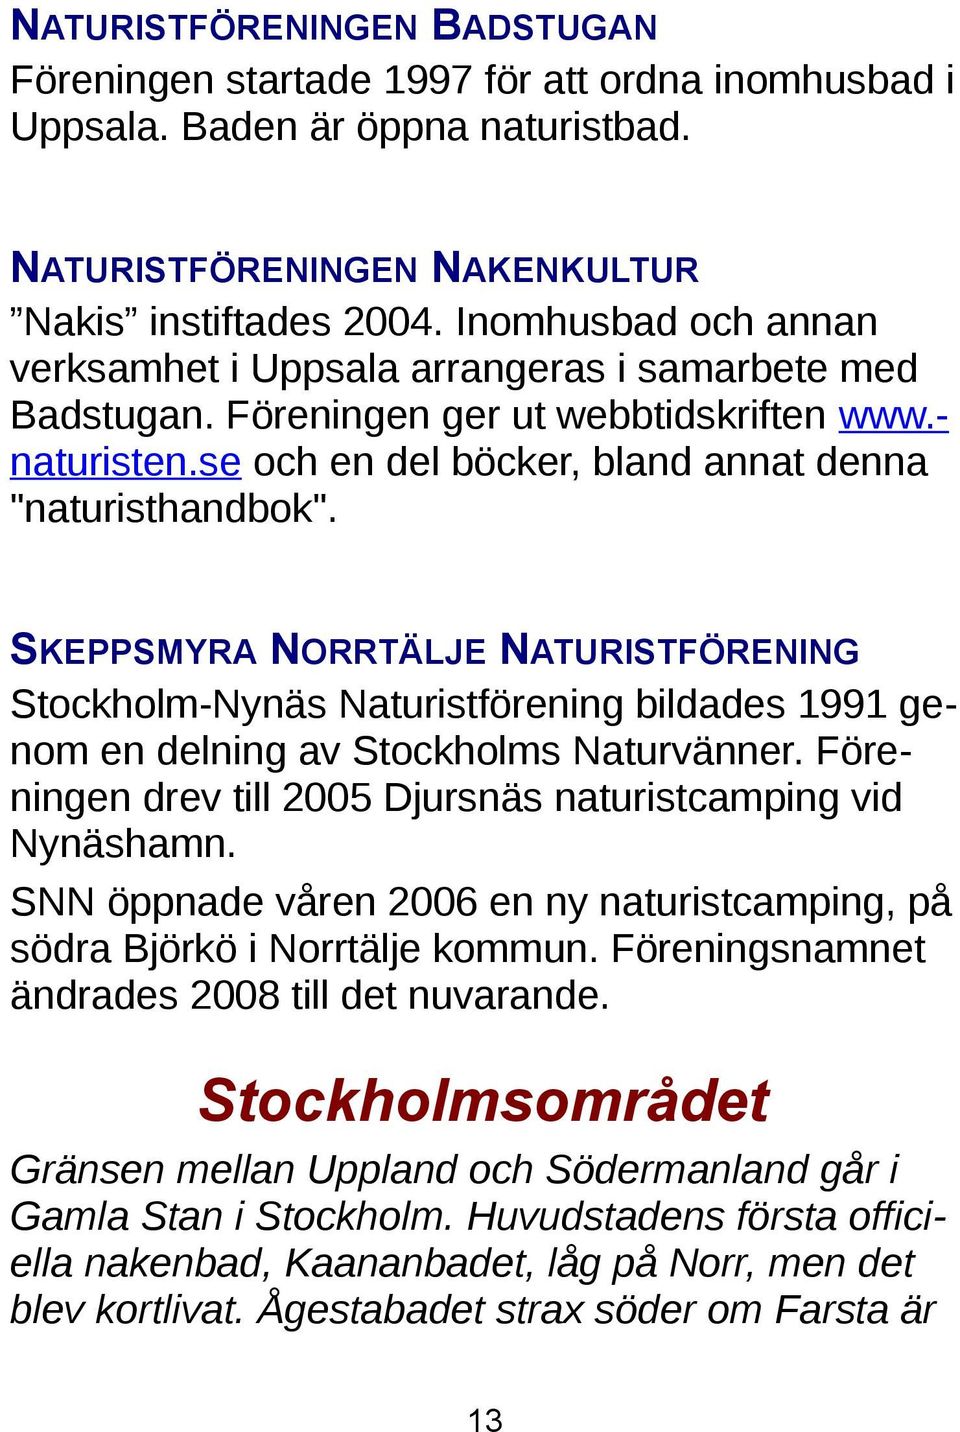 SKEPPSMYRA NORRTÄLJE NATURISTFÖRENING Stockholm-Nynäs Naturistförening bildades 1991 genom en delning av Stockholms Naturvänner. Föreningen drev till 2005 Djursnäs naturistcamping vid Nynäshamn.